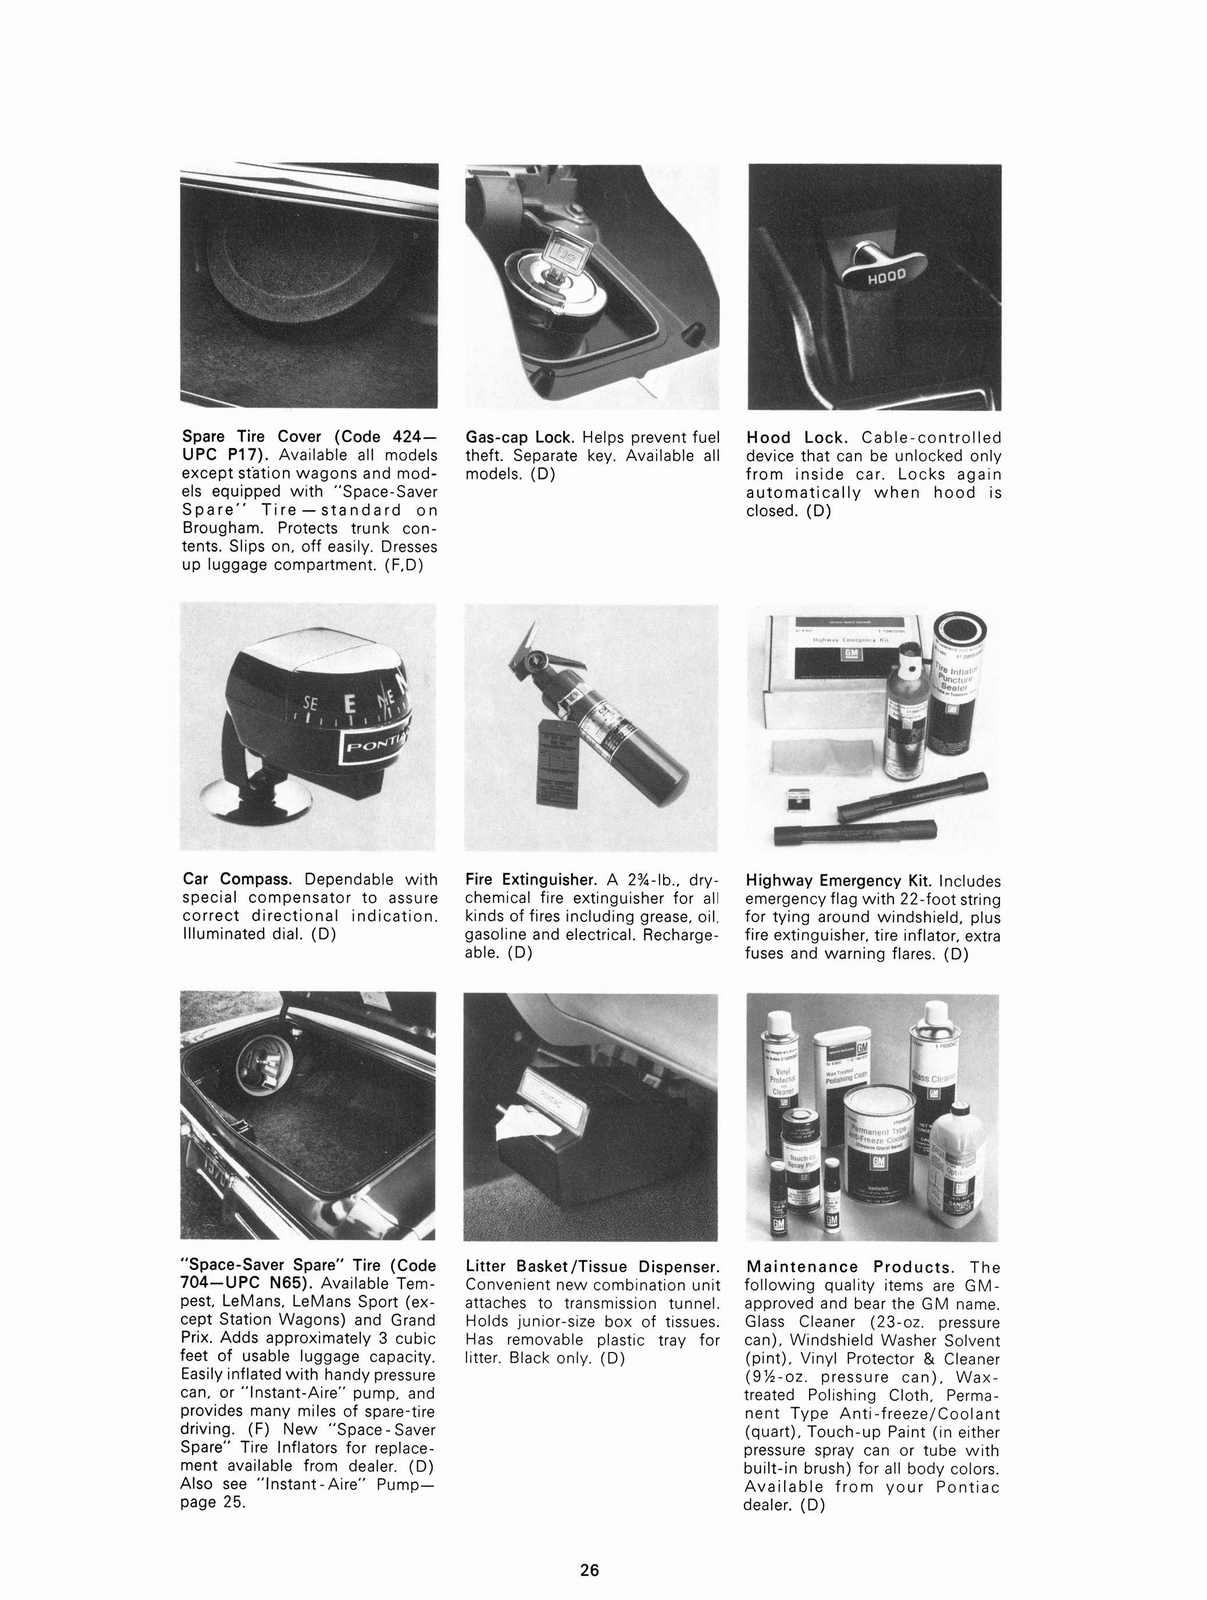 n_1970 Pontiac Accessories-26.jpg